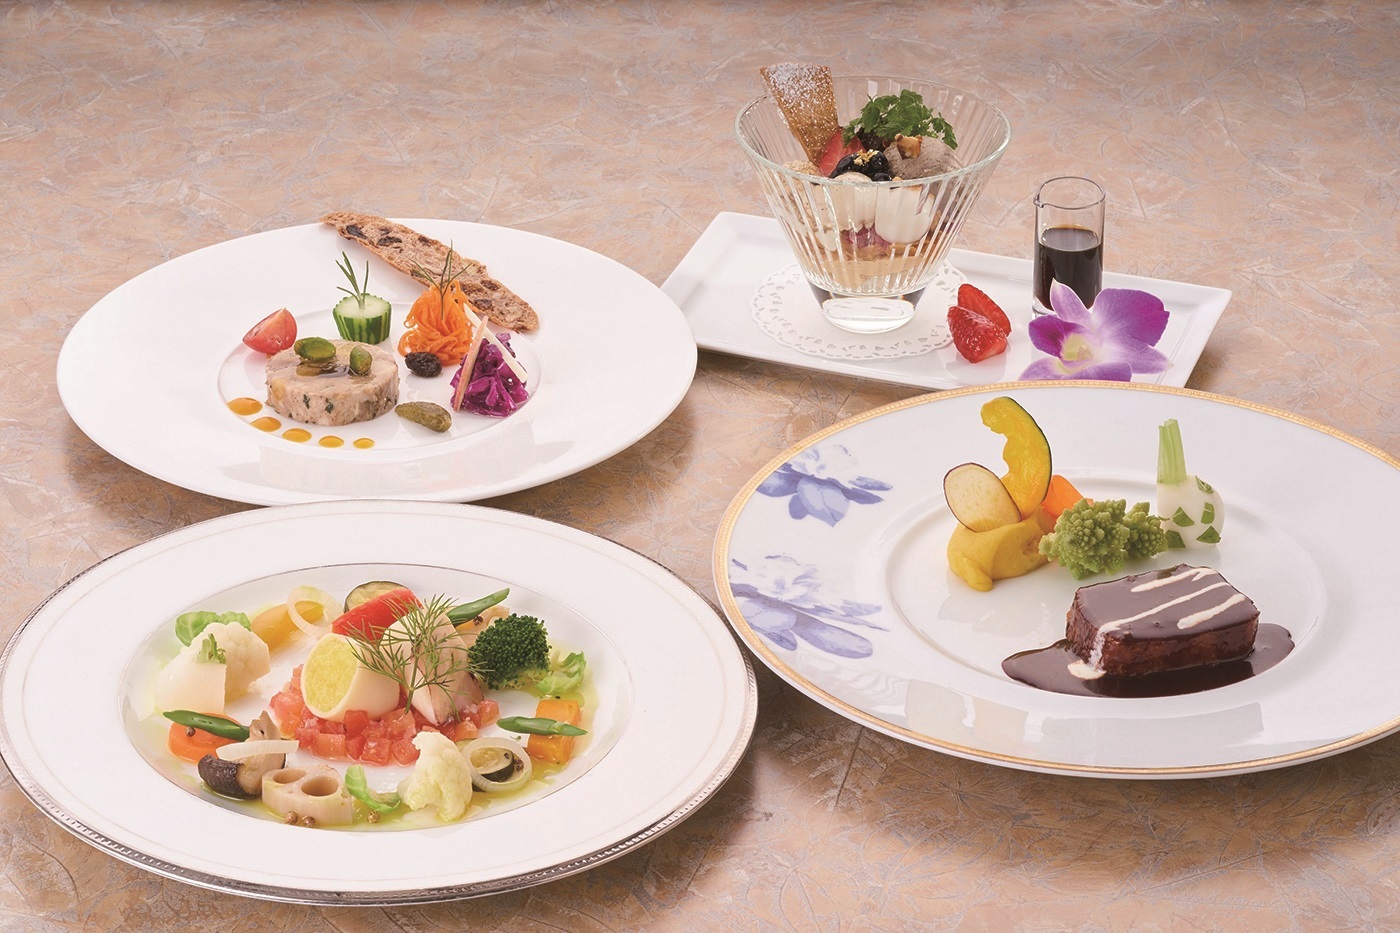 本場仕込のフランス料理が自慢のクラシカルなリゾートホテル♪ 神奈川県 箱根・湯河原への旅！おでかけプラン 選べる夕食「フランス料理」 ツイン